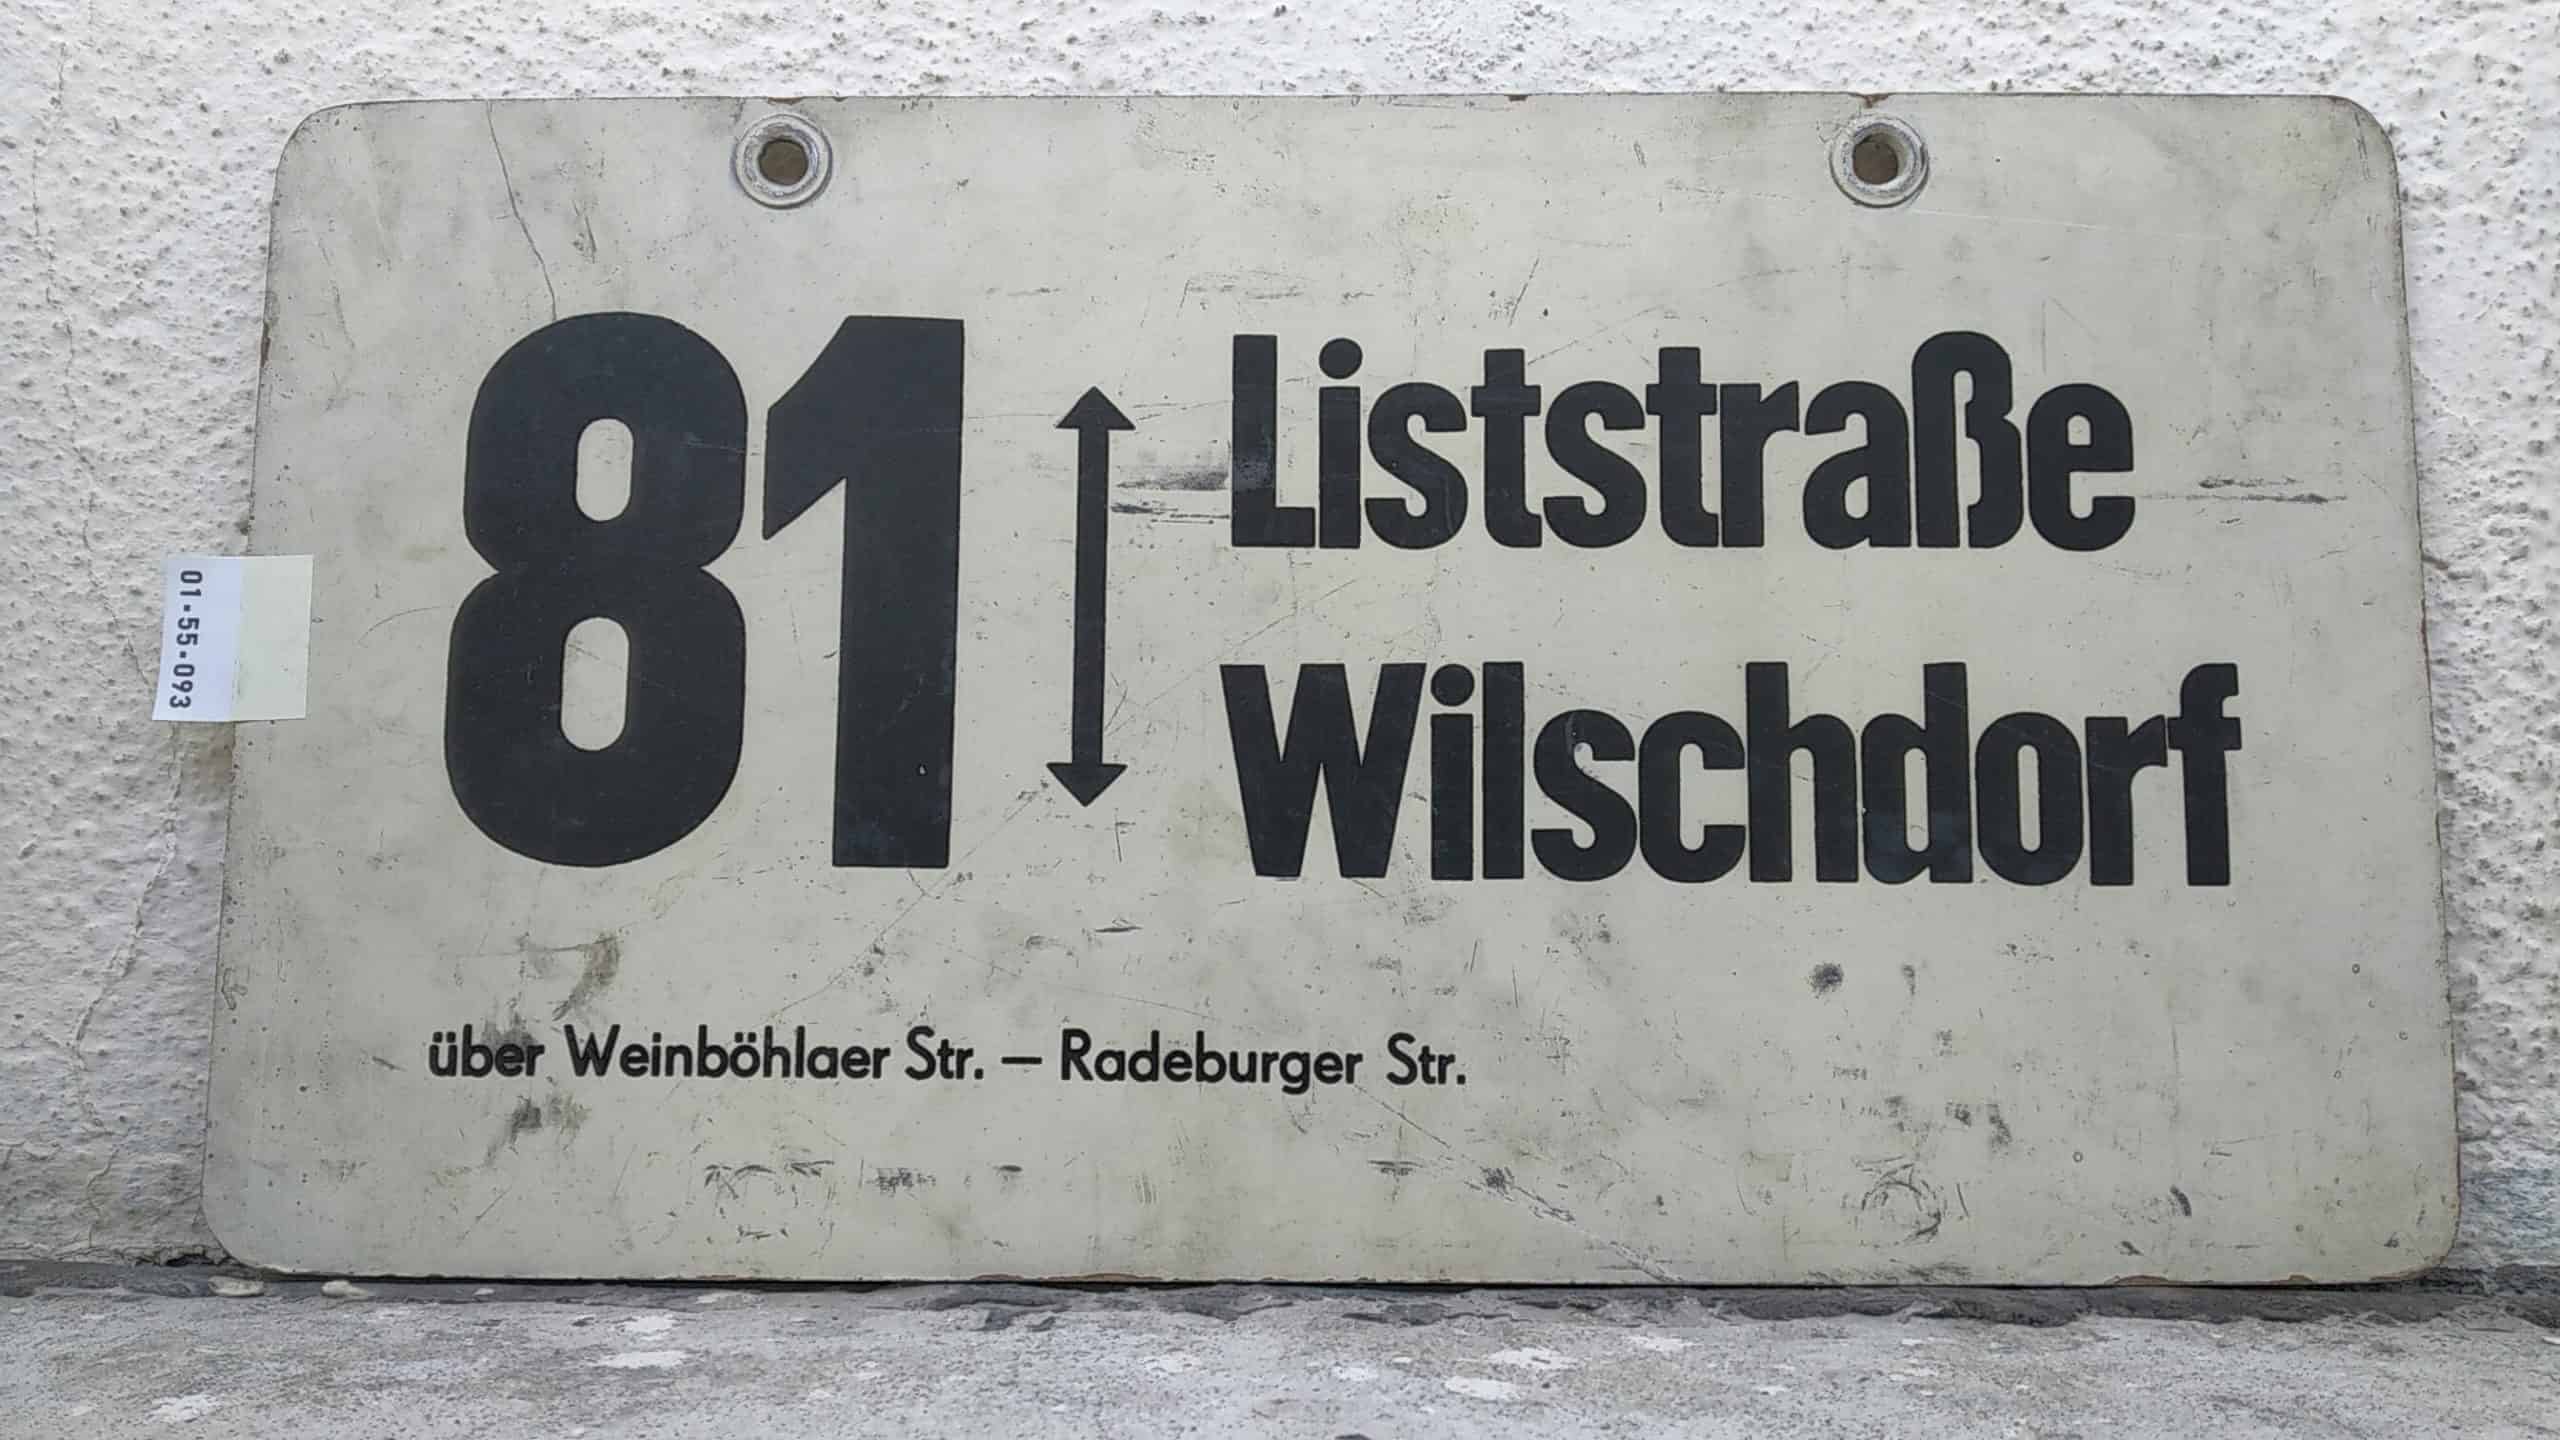 Ein seltenes Bus-Linienschild aus Dresden der Linie 81 von Liststraße nach Wilschdorf